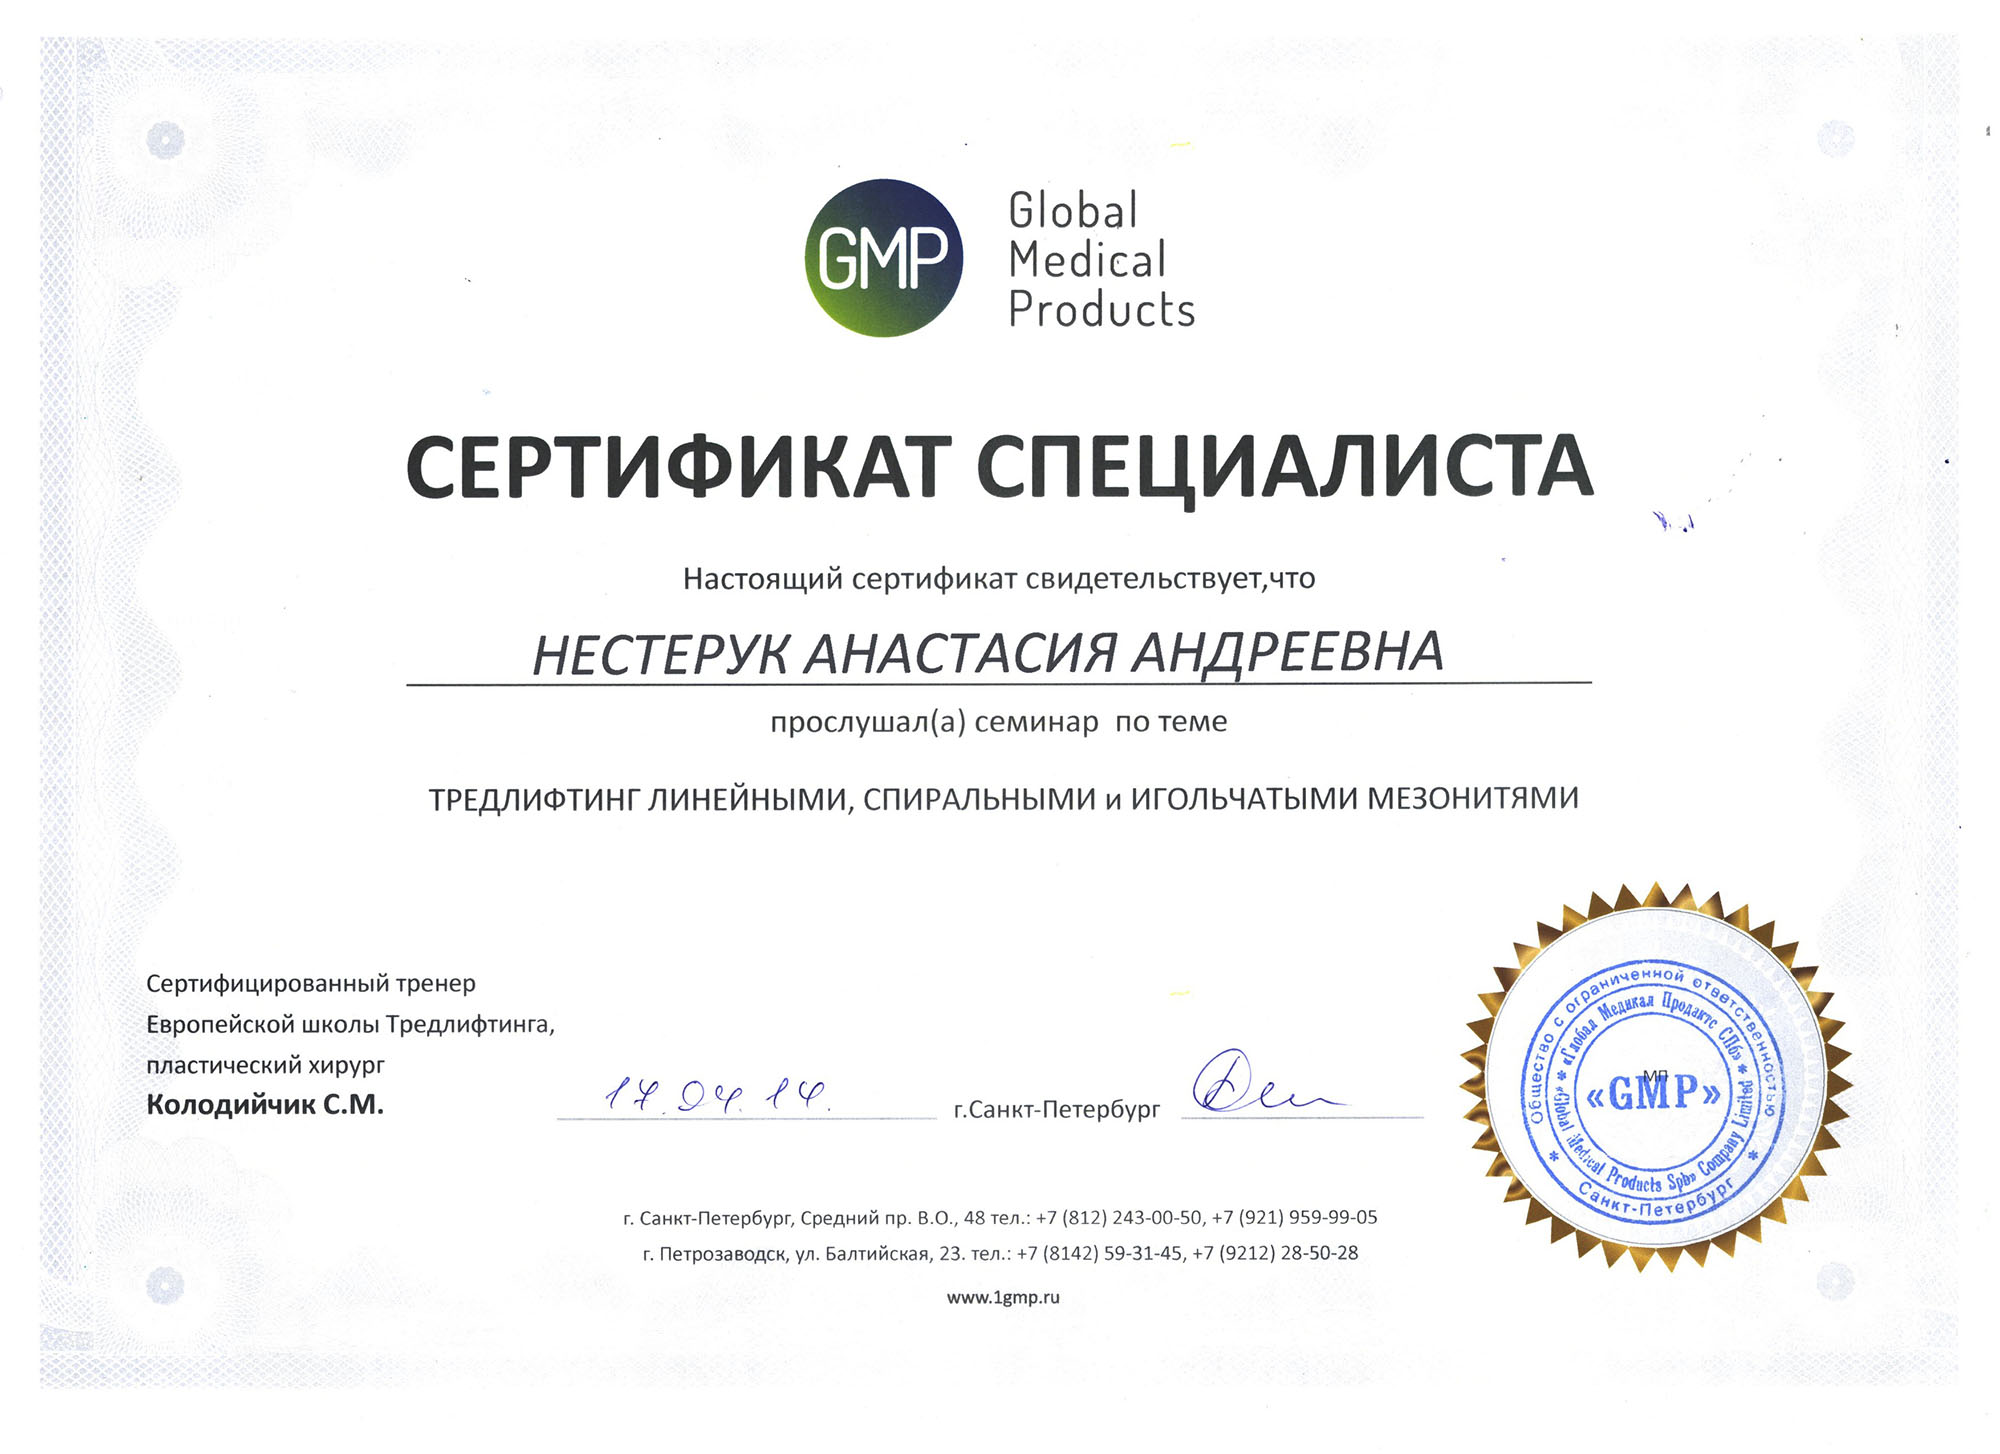 Сертификат — Семинар «Тредлифтинг линейными, спиральными и игольчатыми мезонитями». Яблочко Анастасия Андреевна